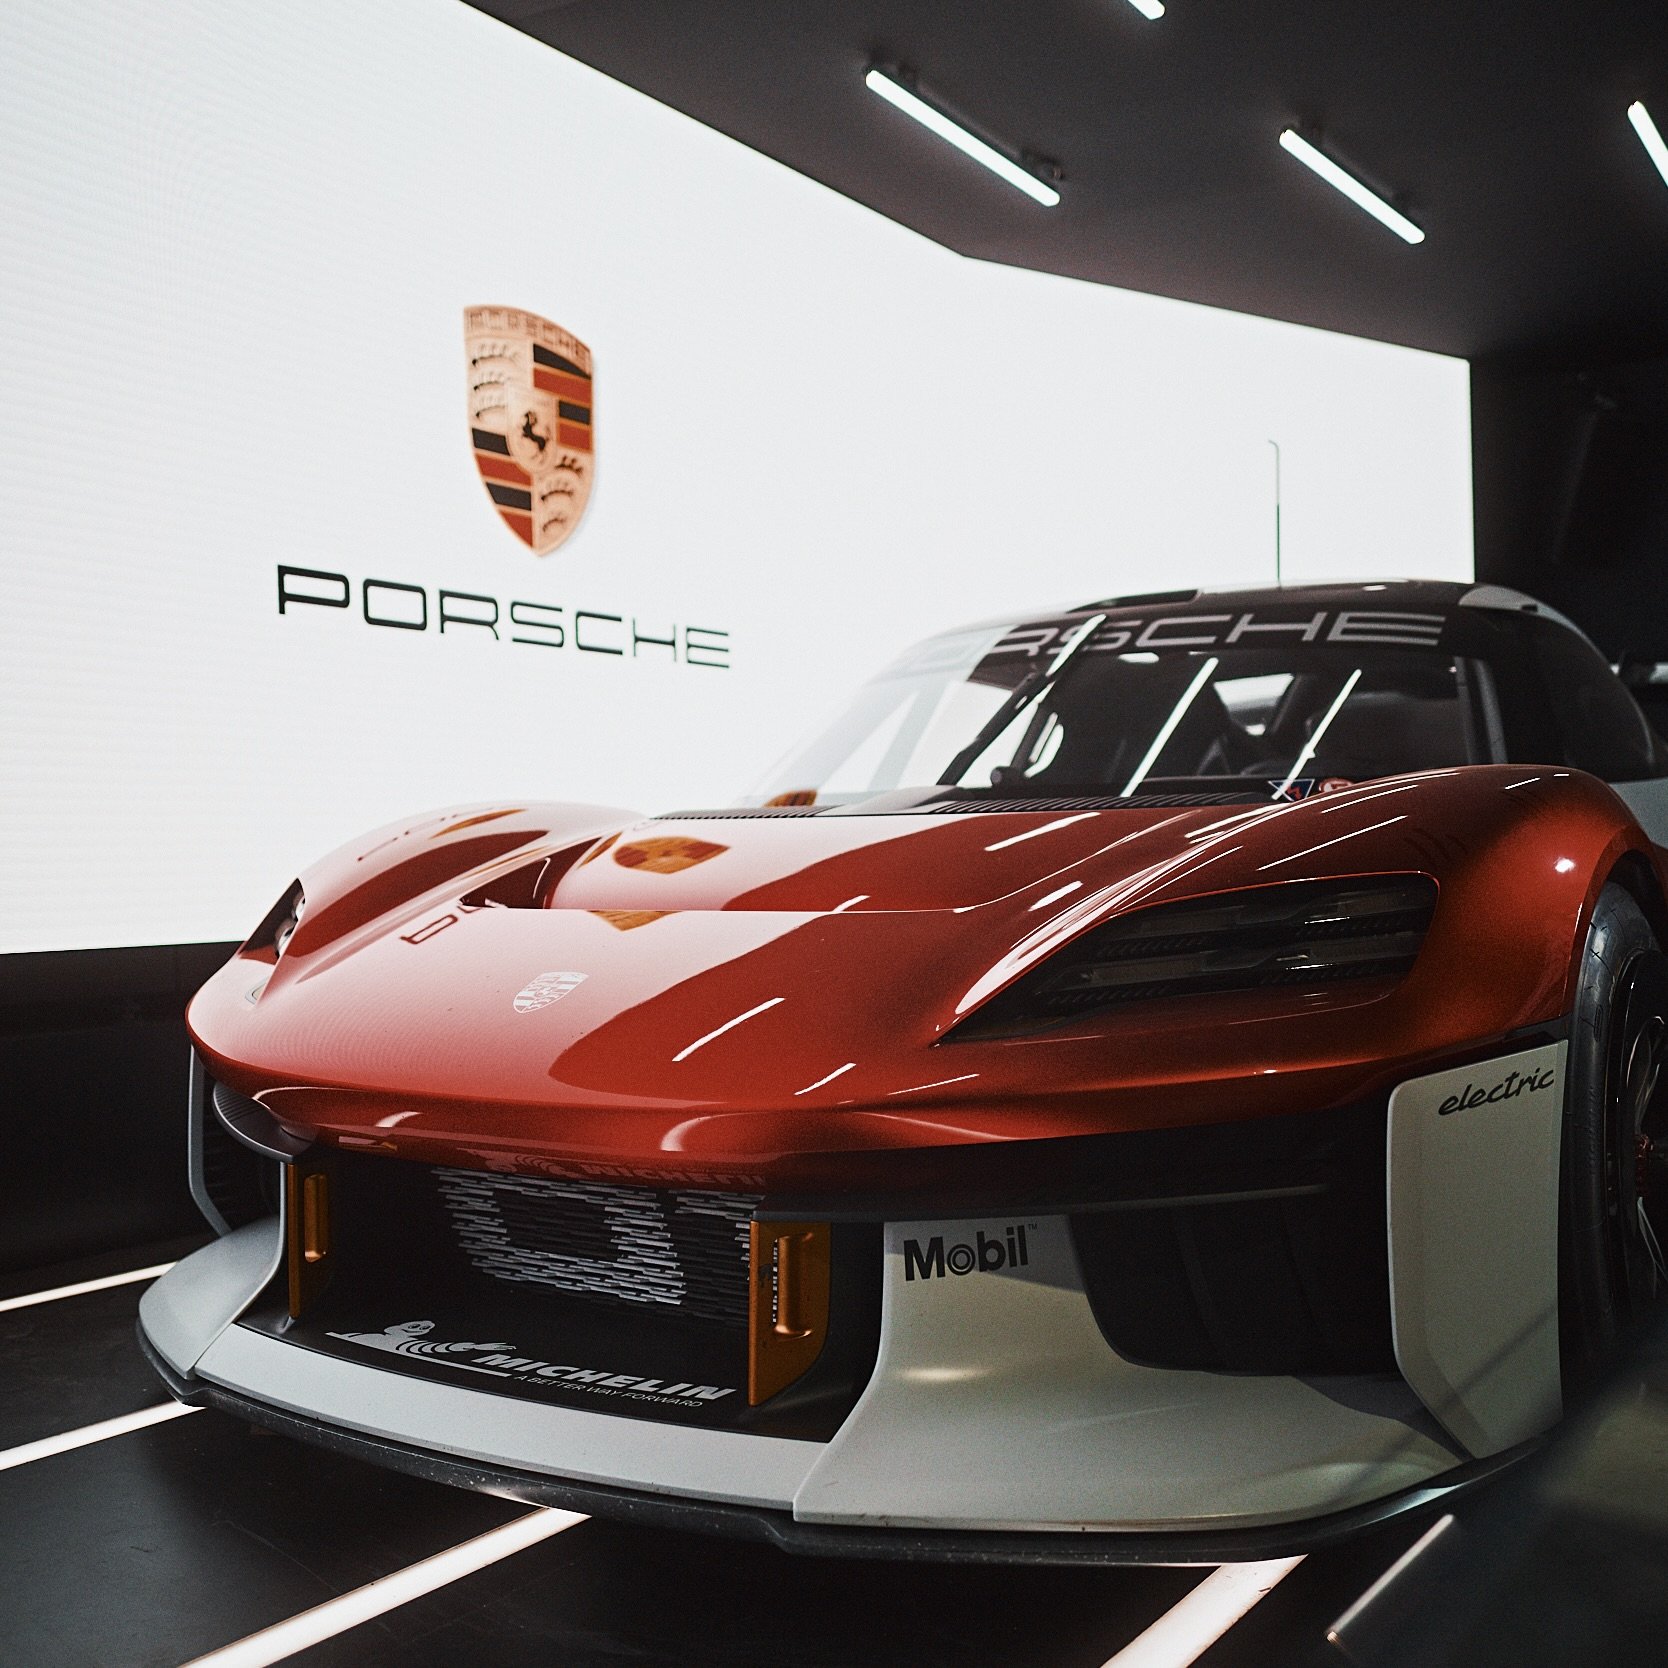 Porsche Mission R premiers in RENNSPORT — RENNSPORT